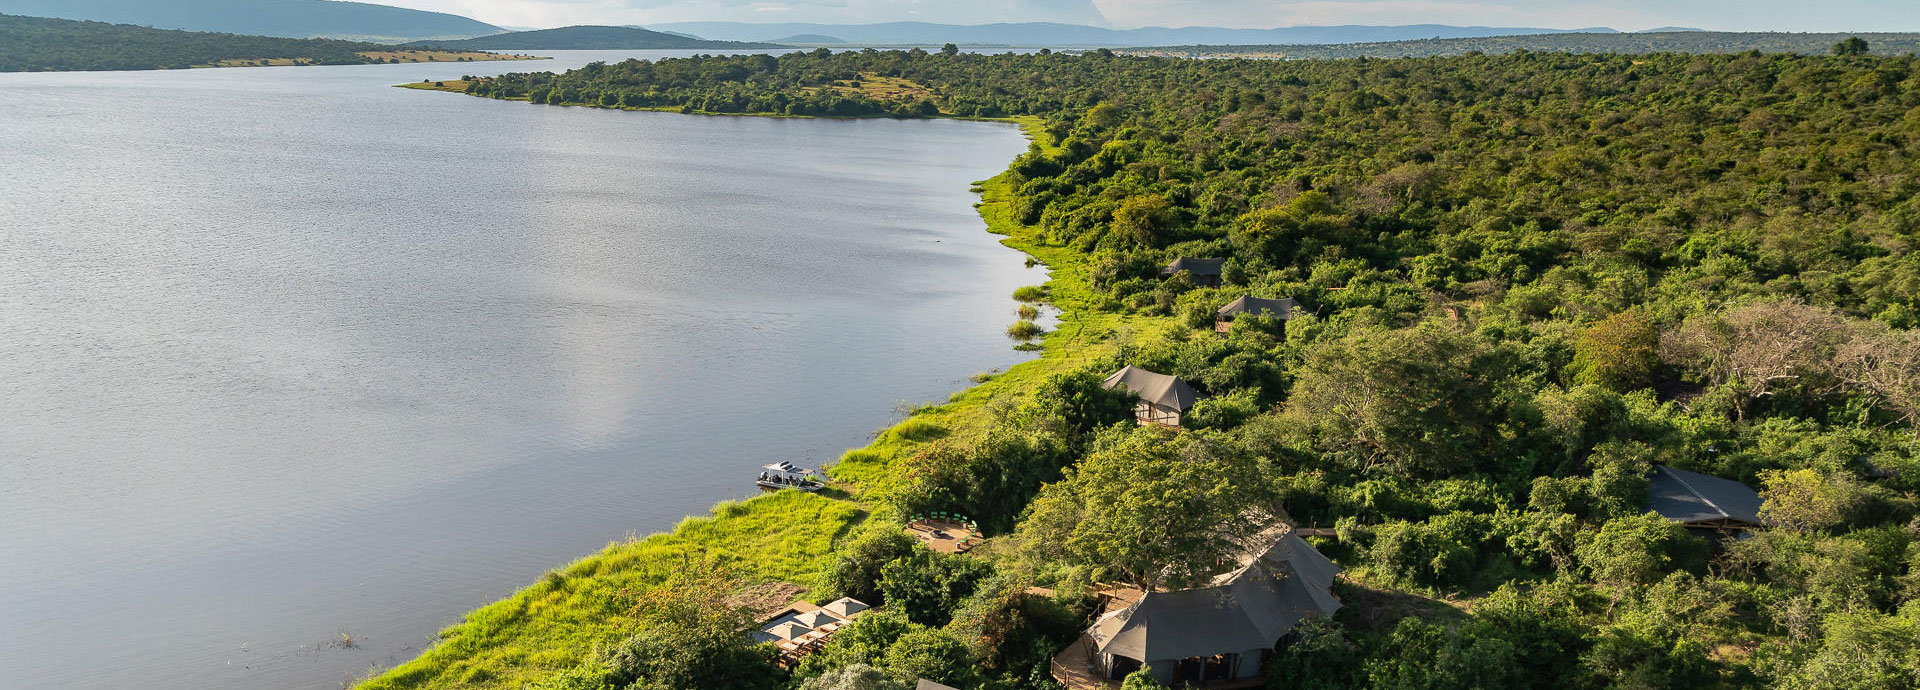 Aerial view of Magashi Camp at the shore of Lake Rwanyakazinga